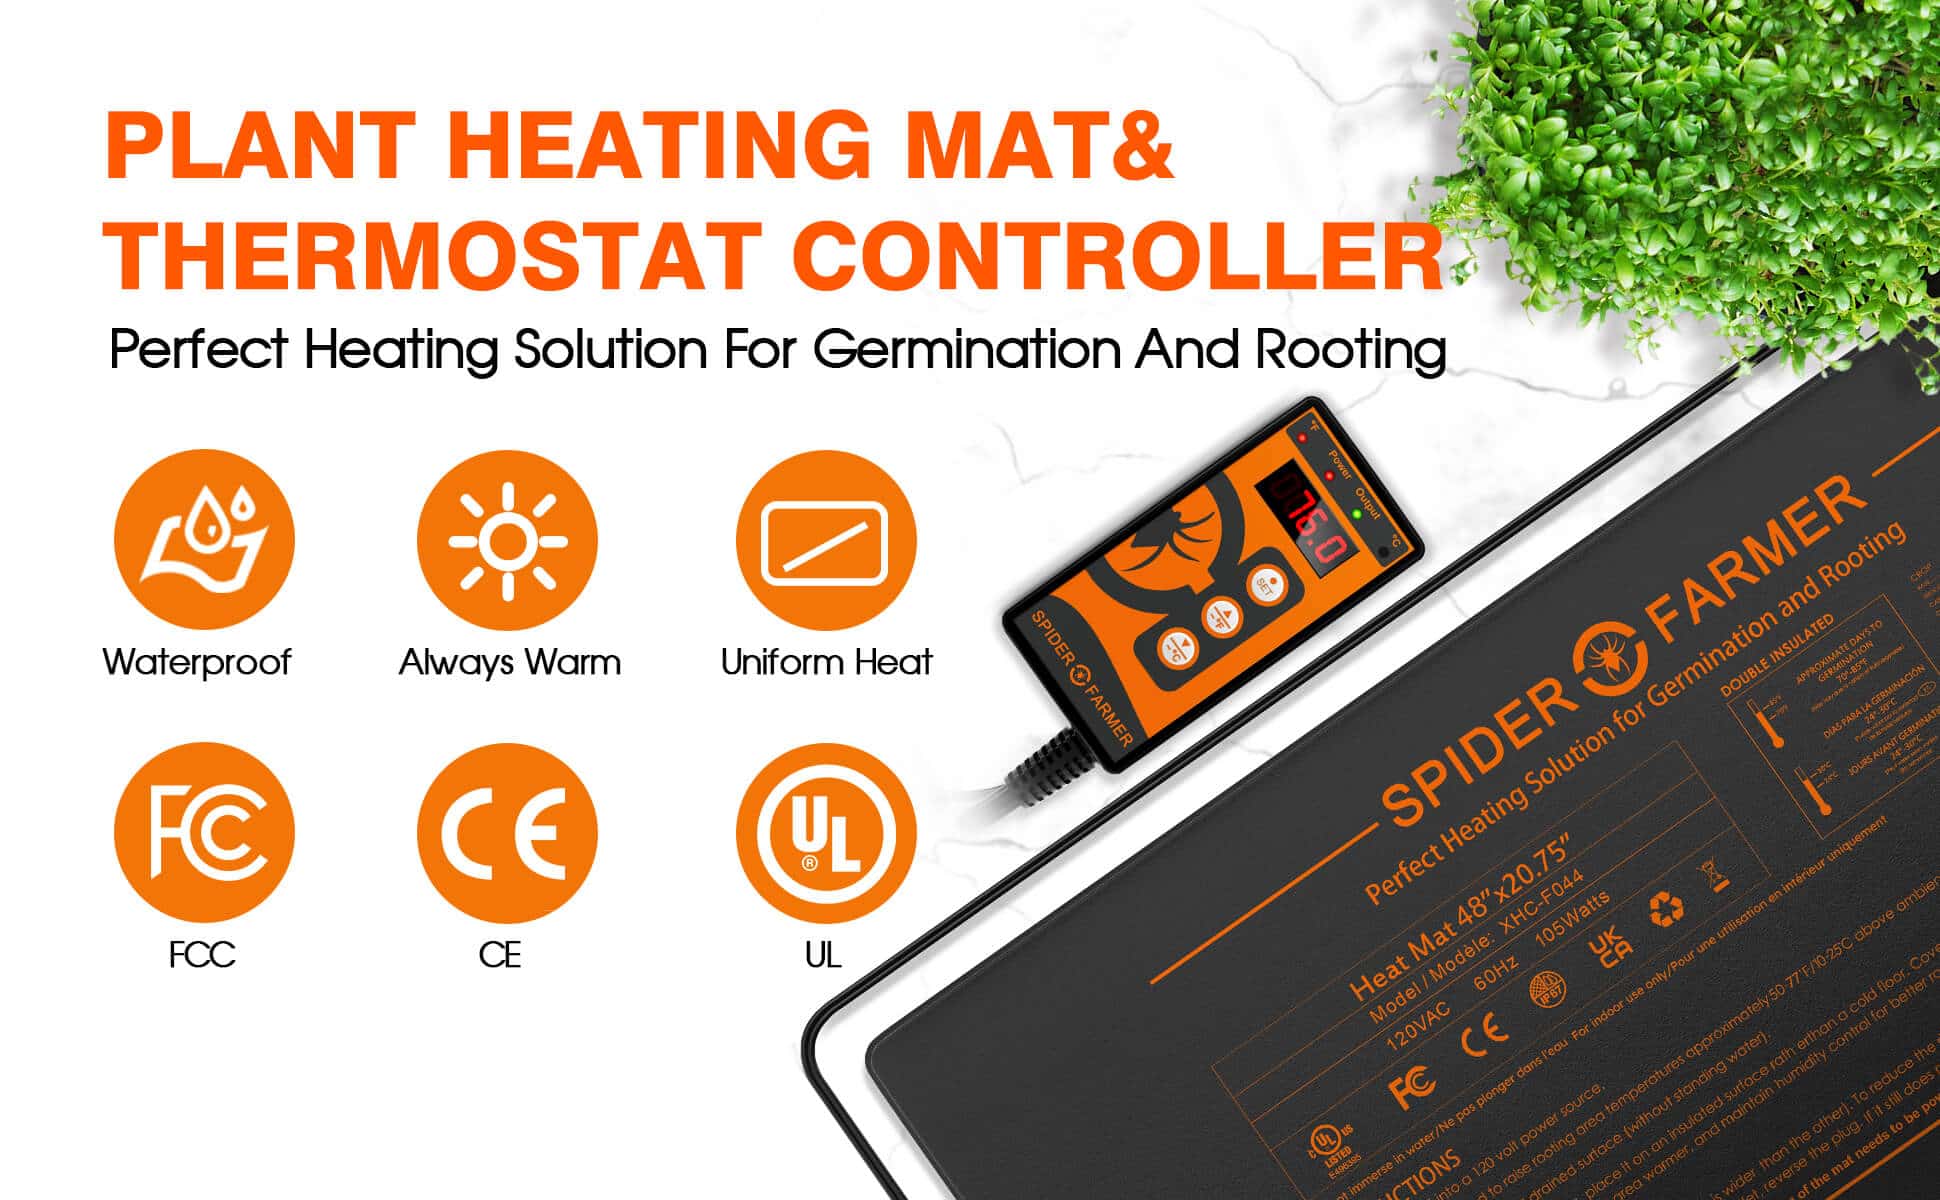 Spider Farmer® 48”X20.75” Seedling Heat Mat & Controller Set